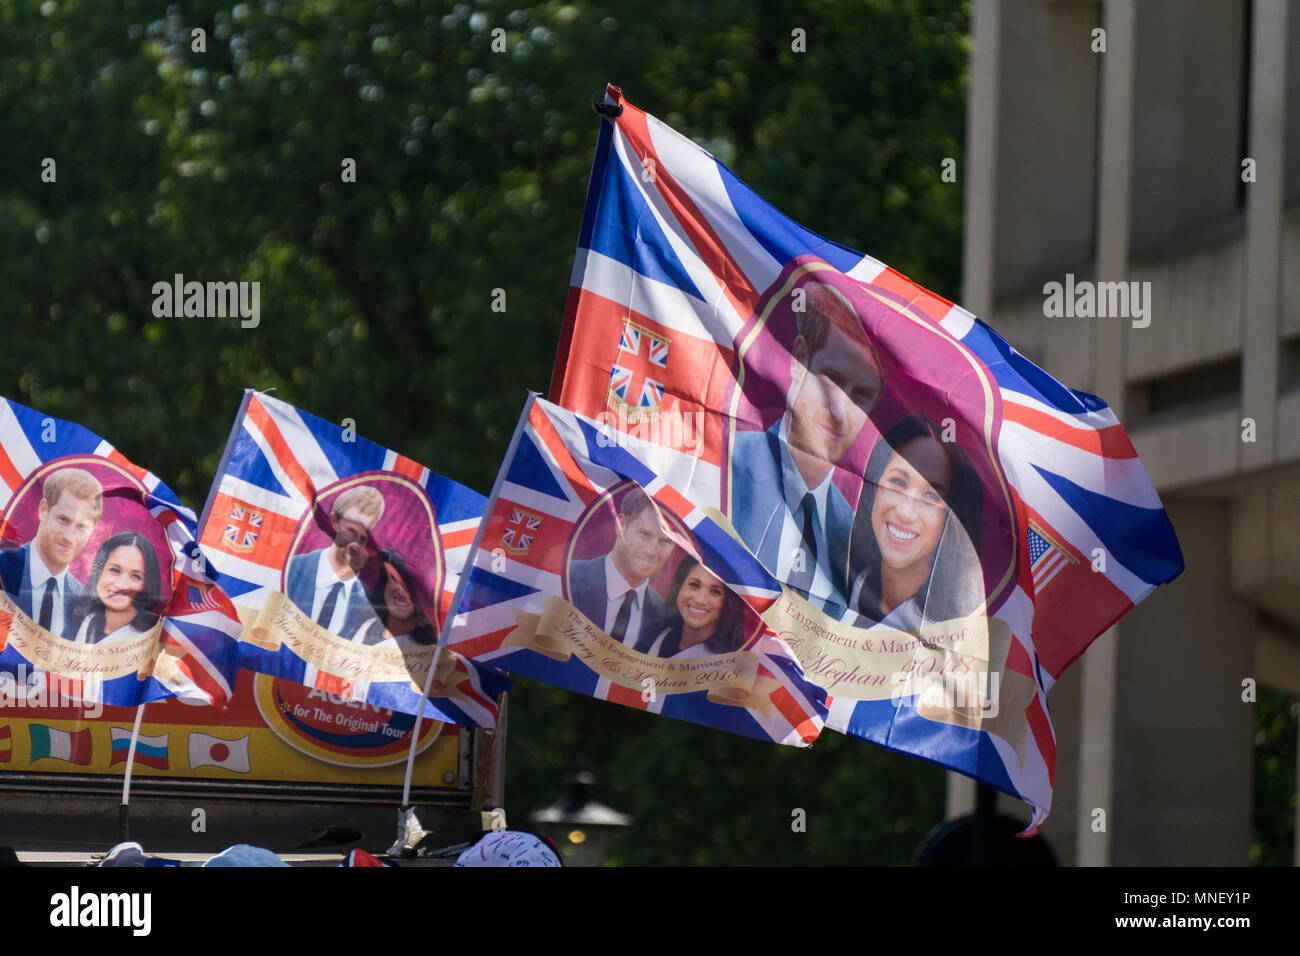 Londres, Royaume-Uni - 15 MAI 2018 : Union jack flag avec le prince Harry et Meghan Markle sur pour célébrer le mariage royal. Banque D'Images